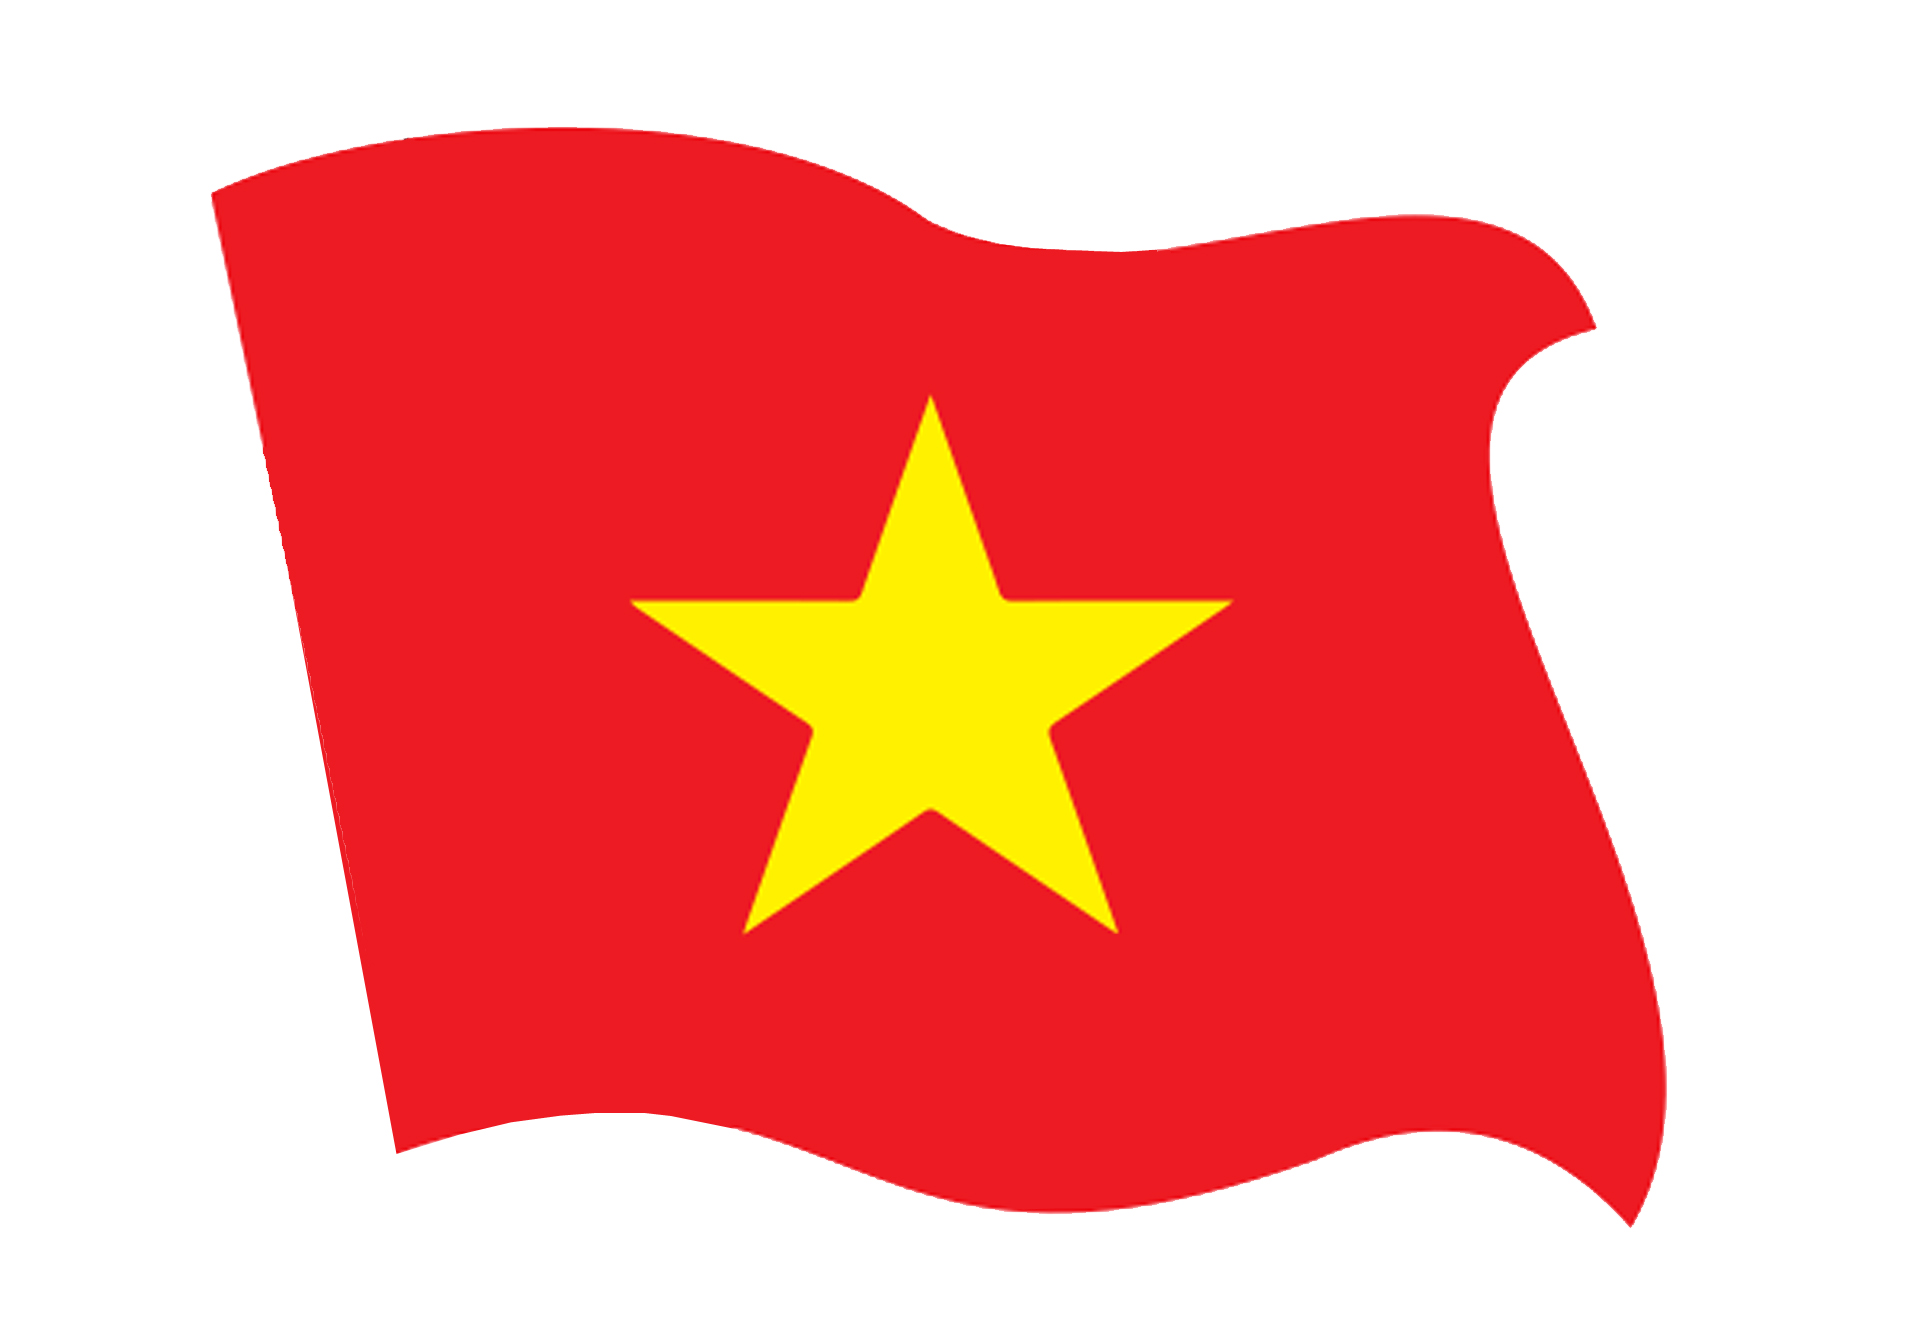 Quốc kỳ cây cọ vàng trên cờ đỏ Việt Nam ???????? đã trở thành biểu tượng của tình yêu nước, sức mạnh và tự hào của con người Việt Nam. Chúng ta đang vươn lên trên con đường phát triển và trưởng thành, để góp phần vào sự phát triển của thế giới. Hãy xem ảnh và cảm nhận niềm tự hào của một dân tộc Việt Nam đang đứng trên bờ vực của thành công lớn lao!